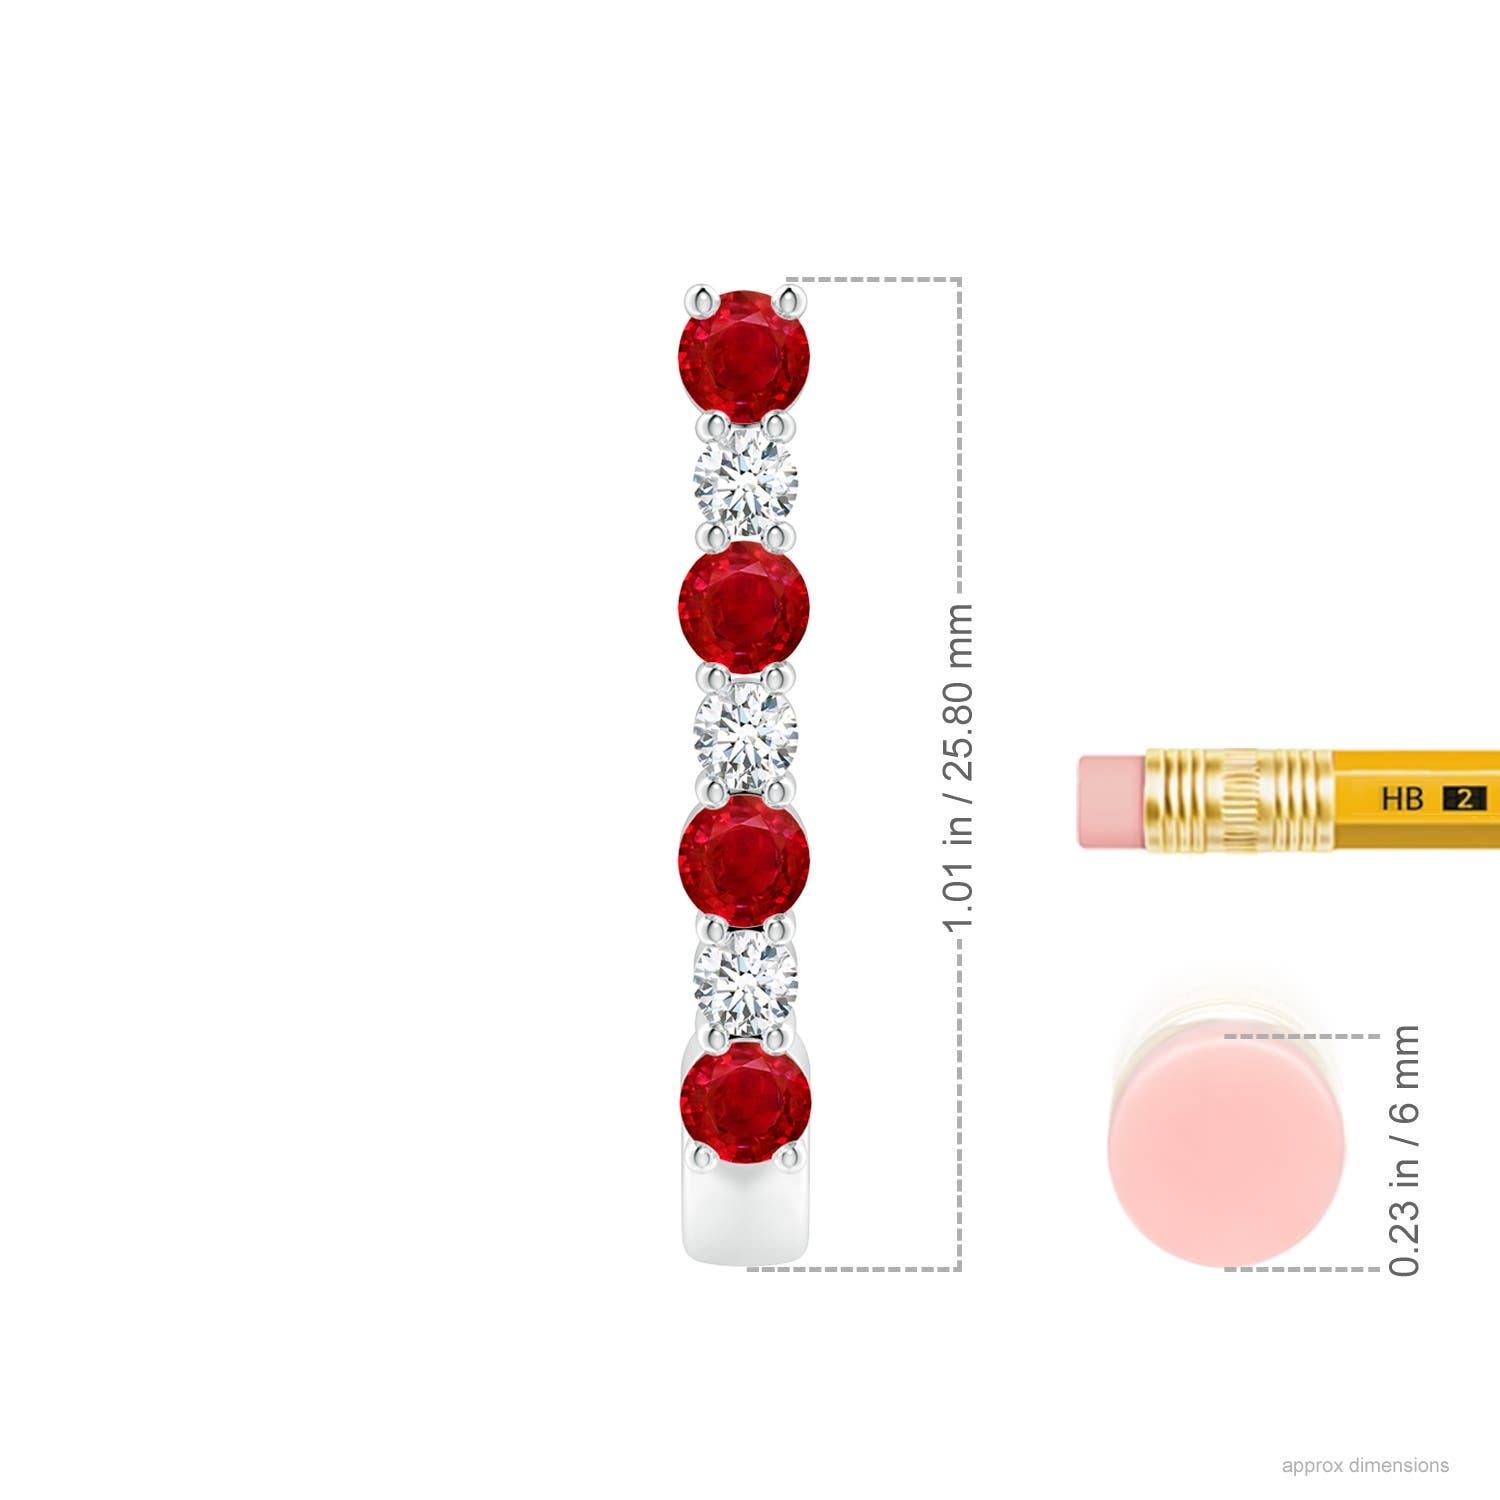 Diese atemberaubenden Rubin- und Diamant-Ohrringe sind aus Platin gefertigt. Die J-Ringe sind abwechselnd mit leuchtend roten Rubinen und funkelnden Diamanten besetzt, was einen fesselnden Effekt erzeugt.
Der Rubin ist der Geburtsstein des Monats